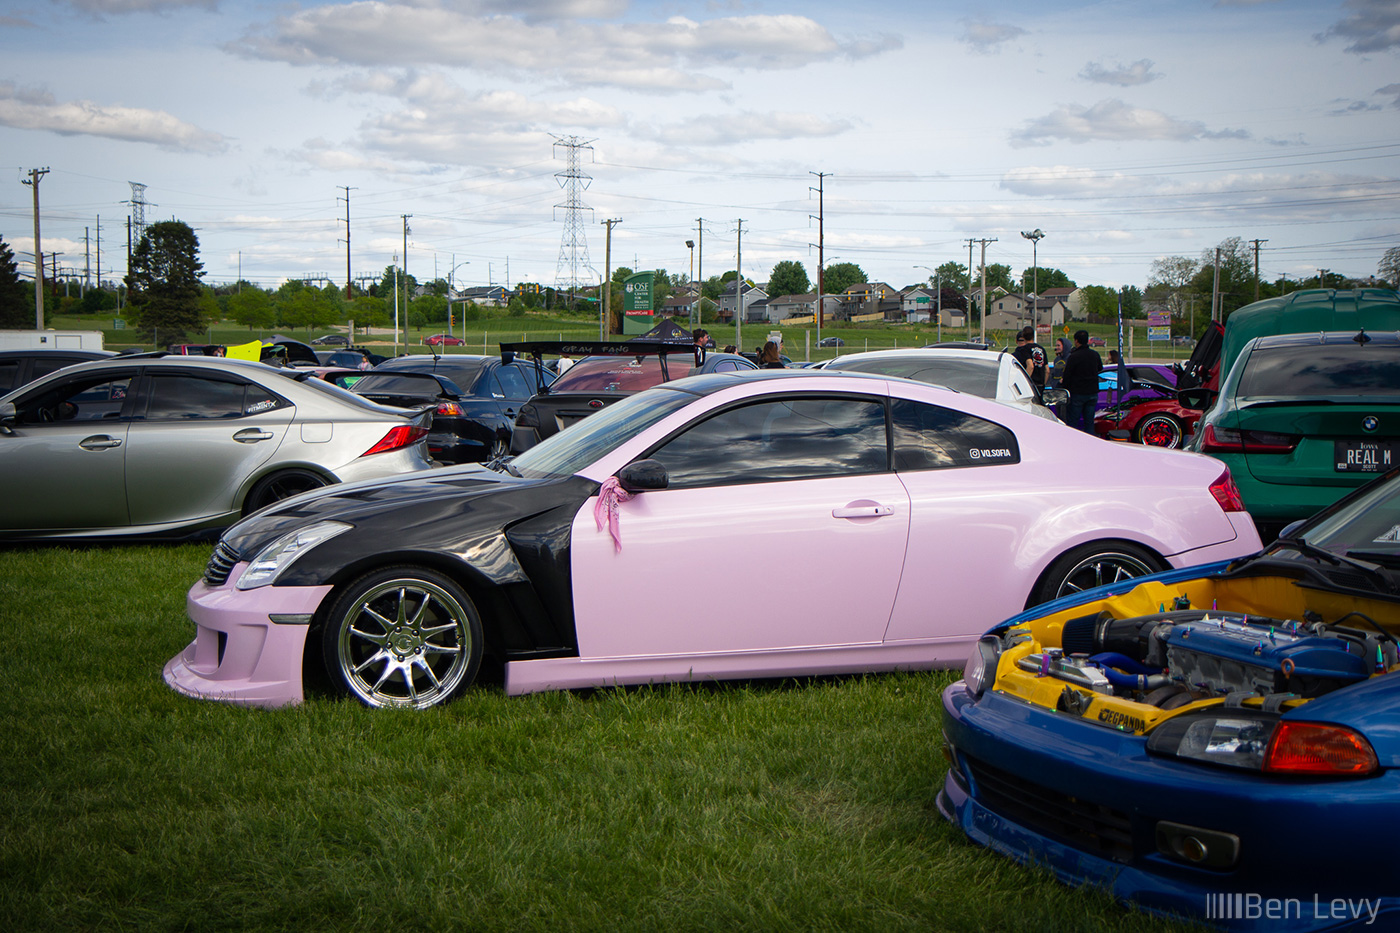 Pink Infiniti G35 Coupe